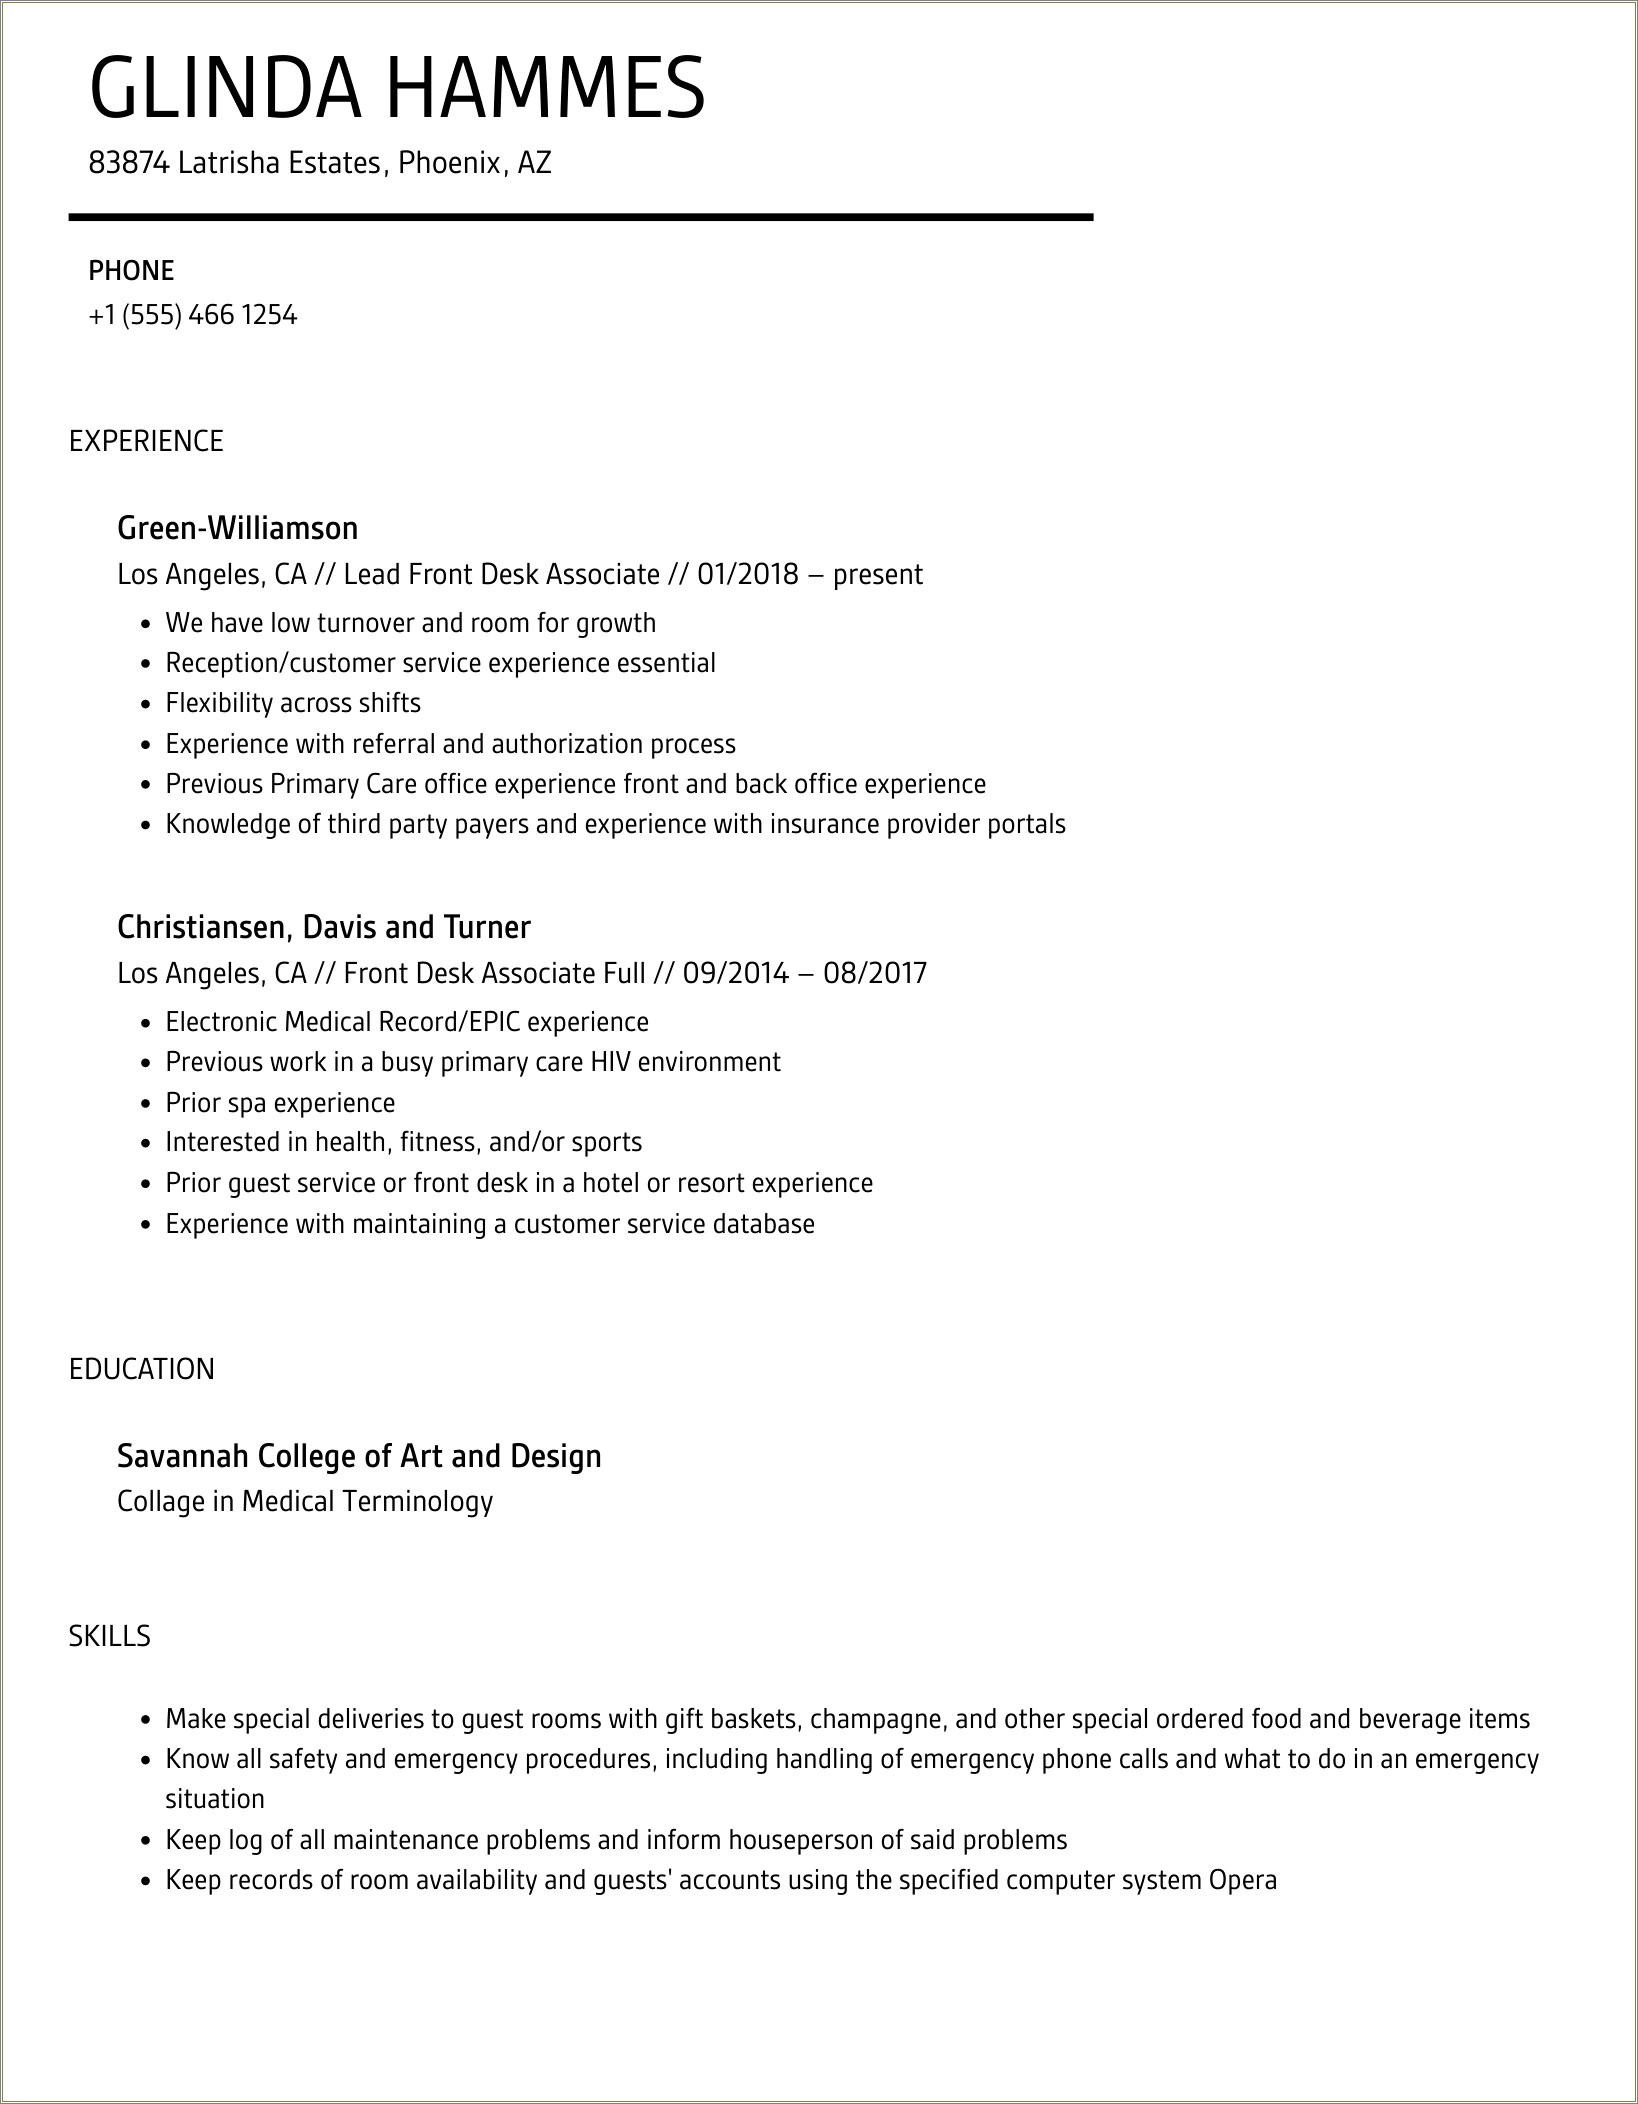 Resume Description For Gym Front Desk